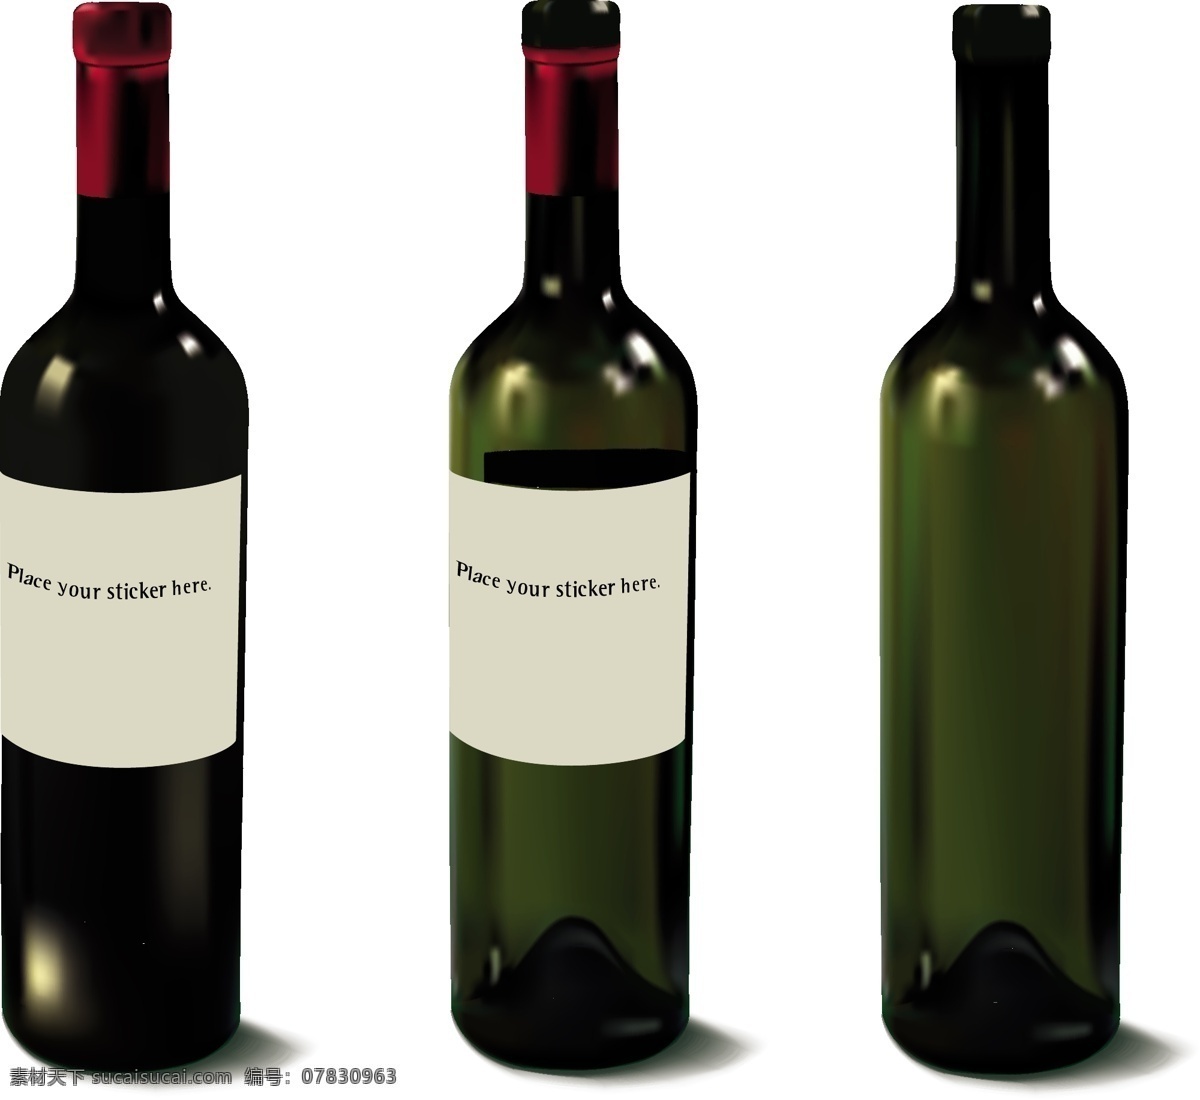 三个 角度 红酒 瓶 红酒瓶图片 三个面 适合 制作 平面 效果 矢量图 日常生活